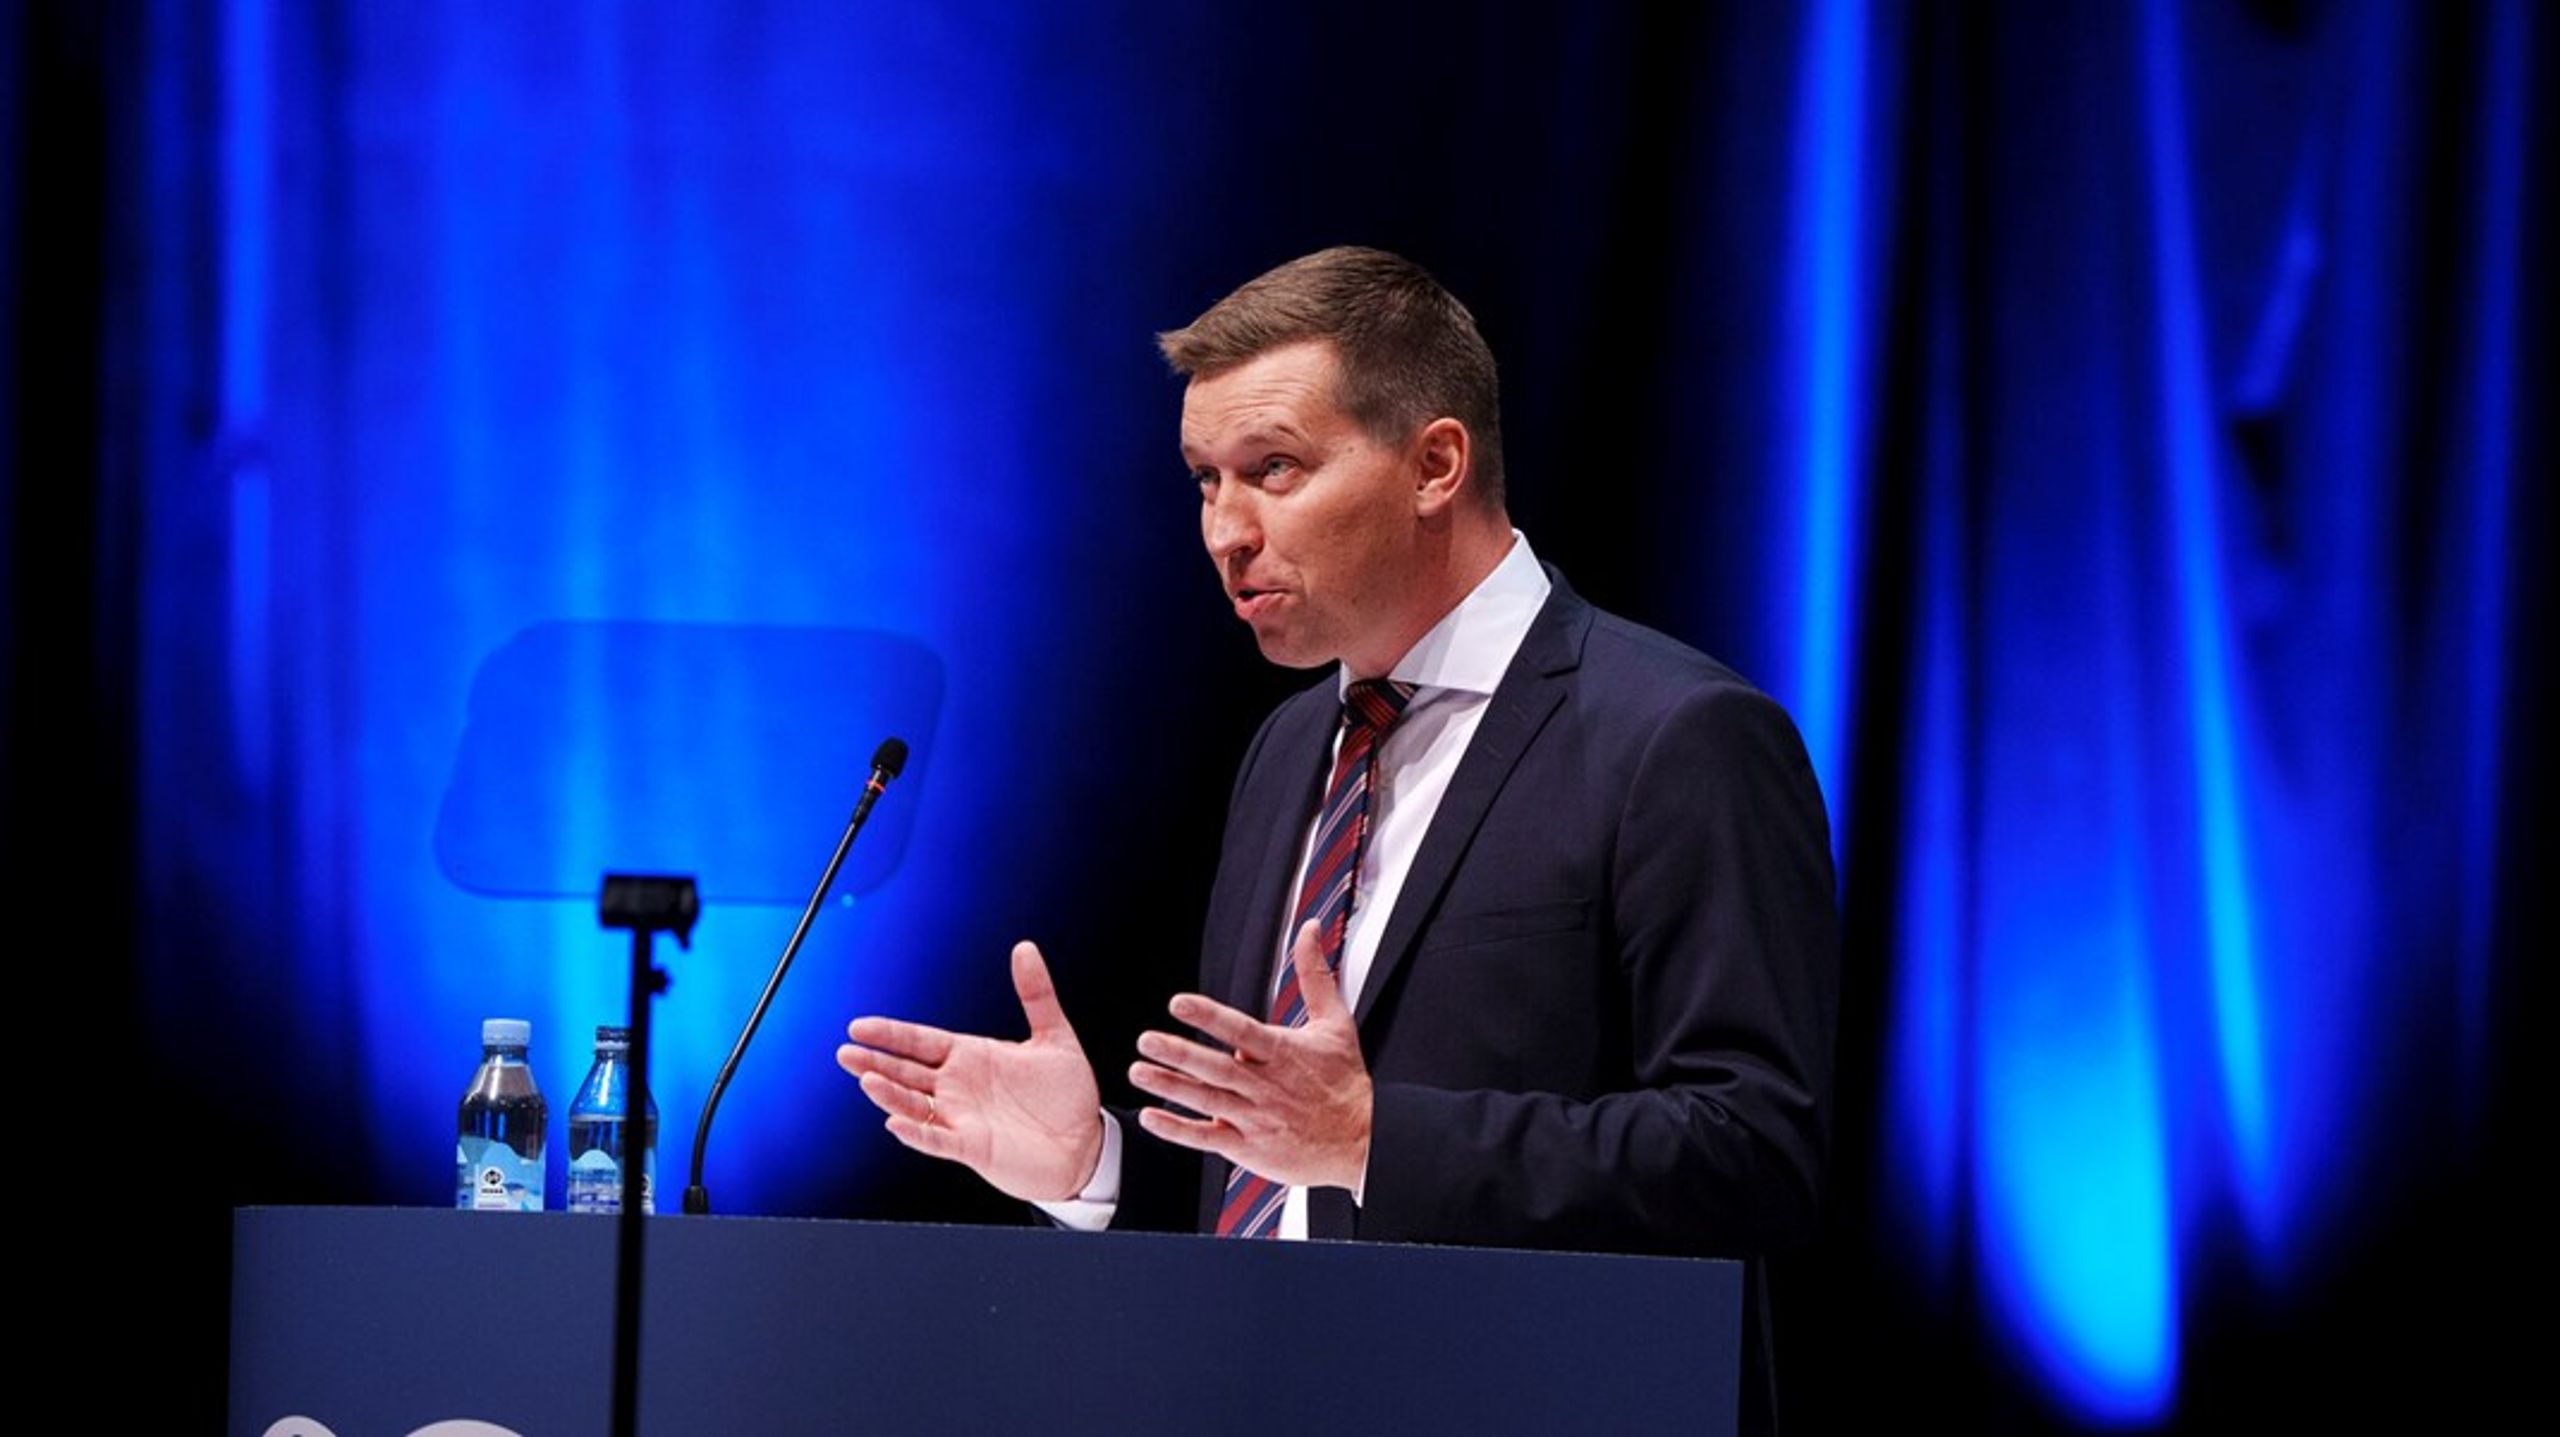 Formand i Landbrug &amp; Fødevarer Søren Søndergaard blander sig nu i sagen om en række kontroversielle udtalelser fra organisationens viceformand.